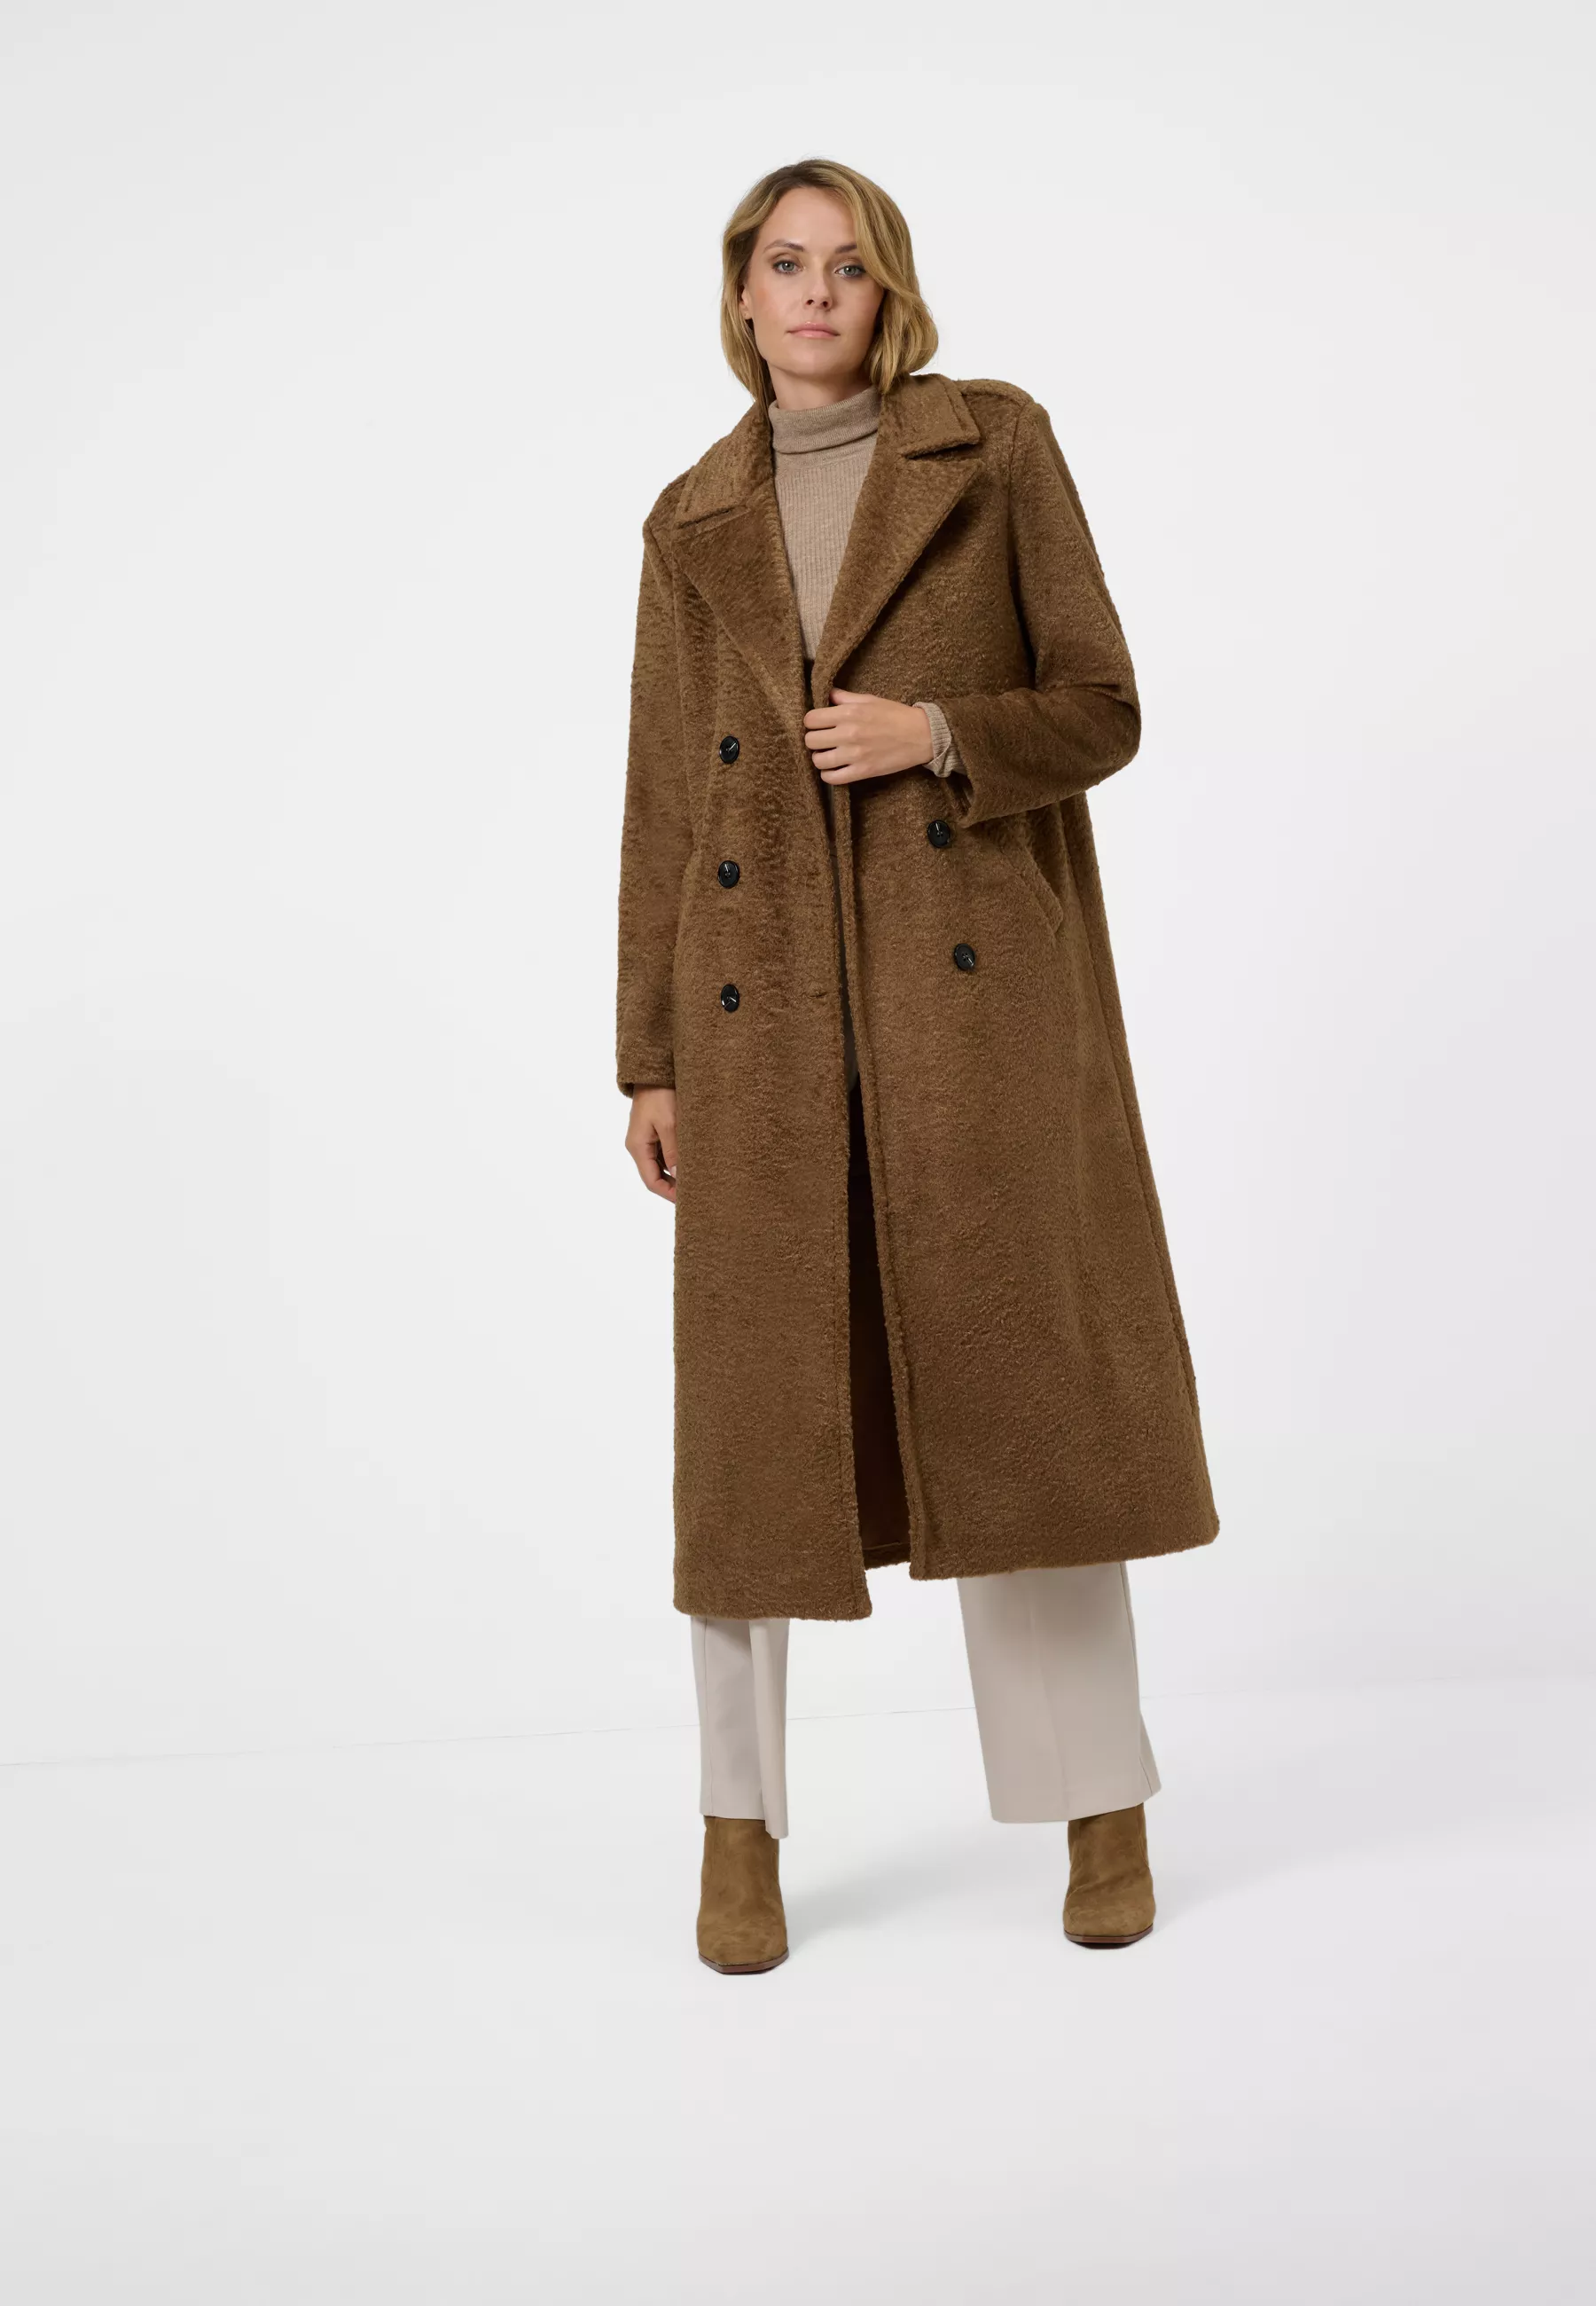 Damen Textil Mantel Pina in Braun von Ricano, Frontansicht am Model